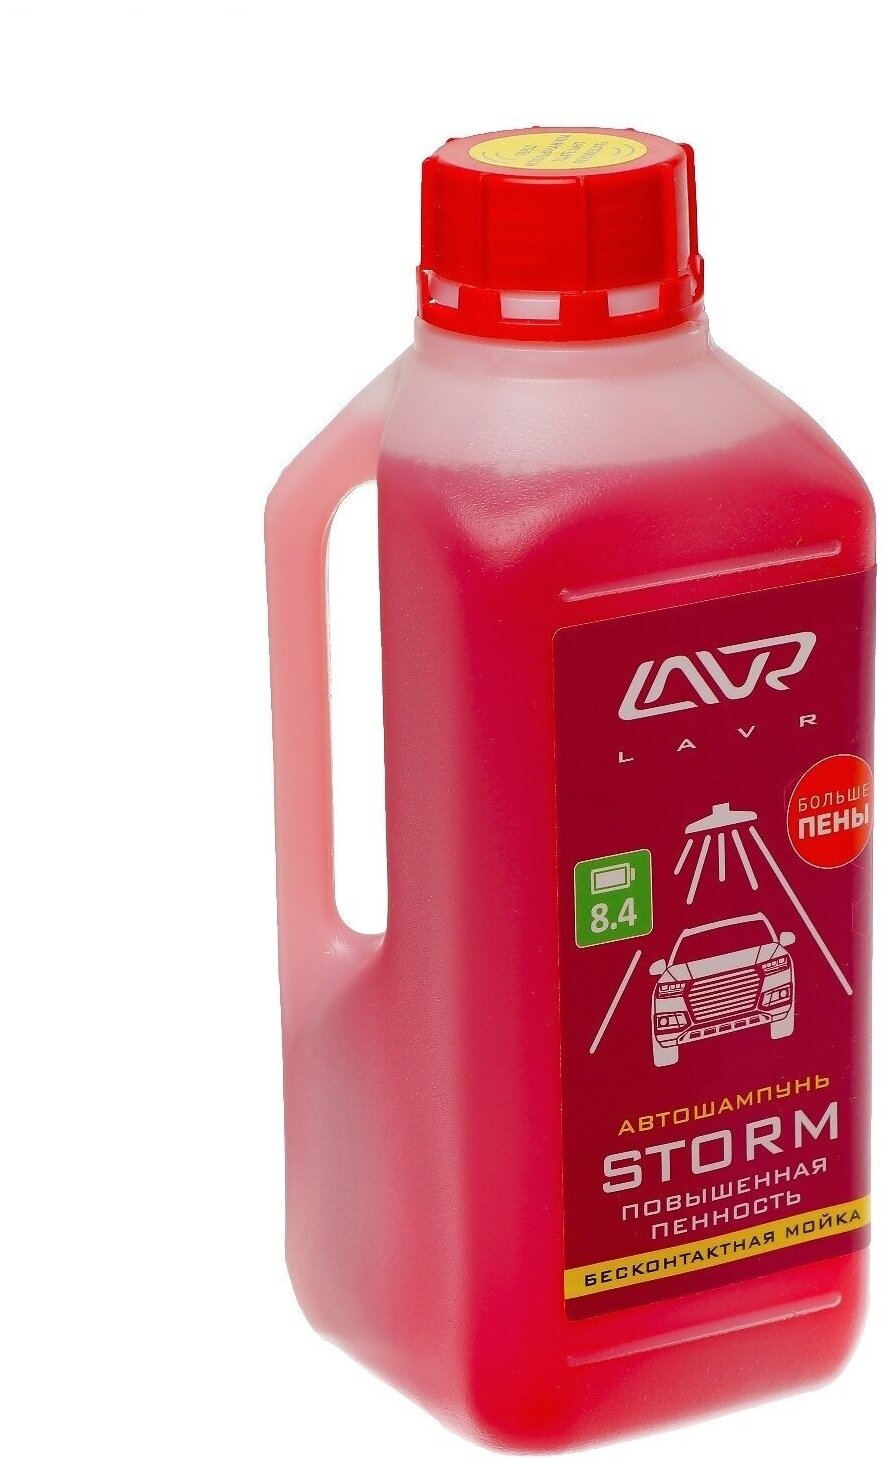 Автошампунь LAVR Storm бесконтакт повышенная пенность 1:100 1 л бутылка Ln2336